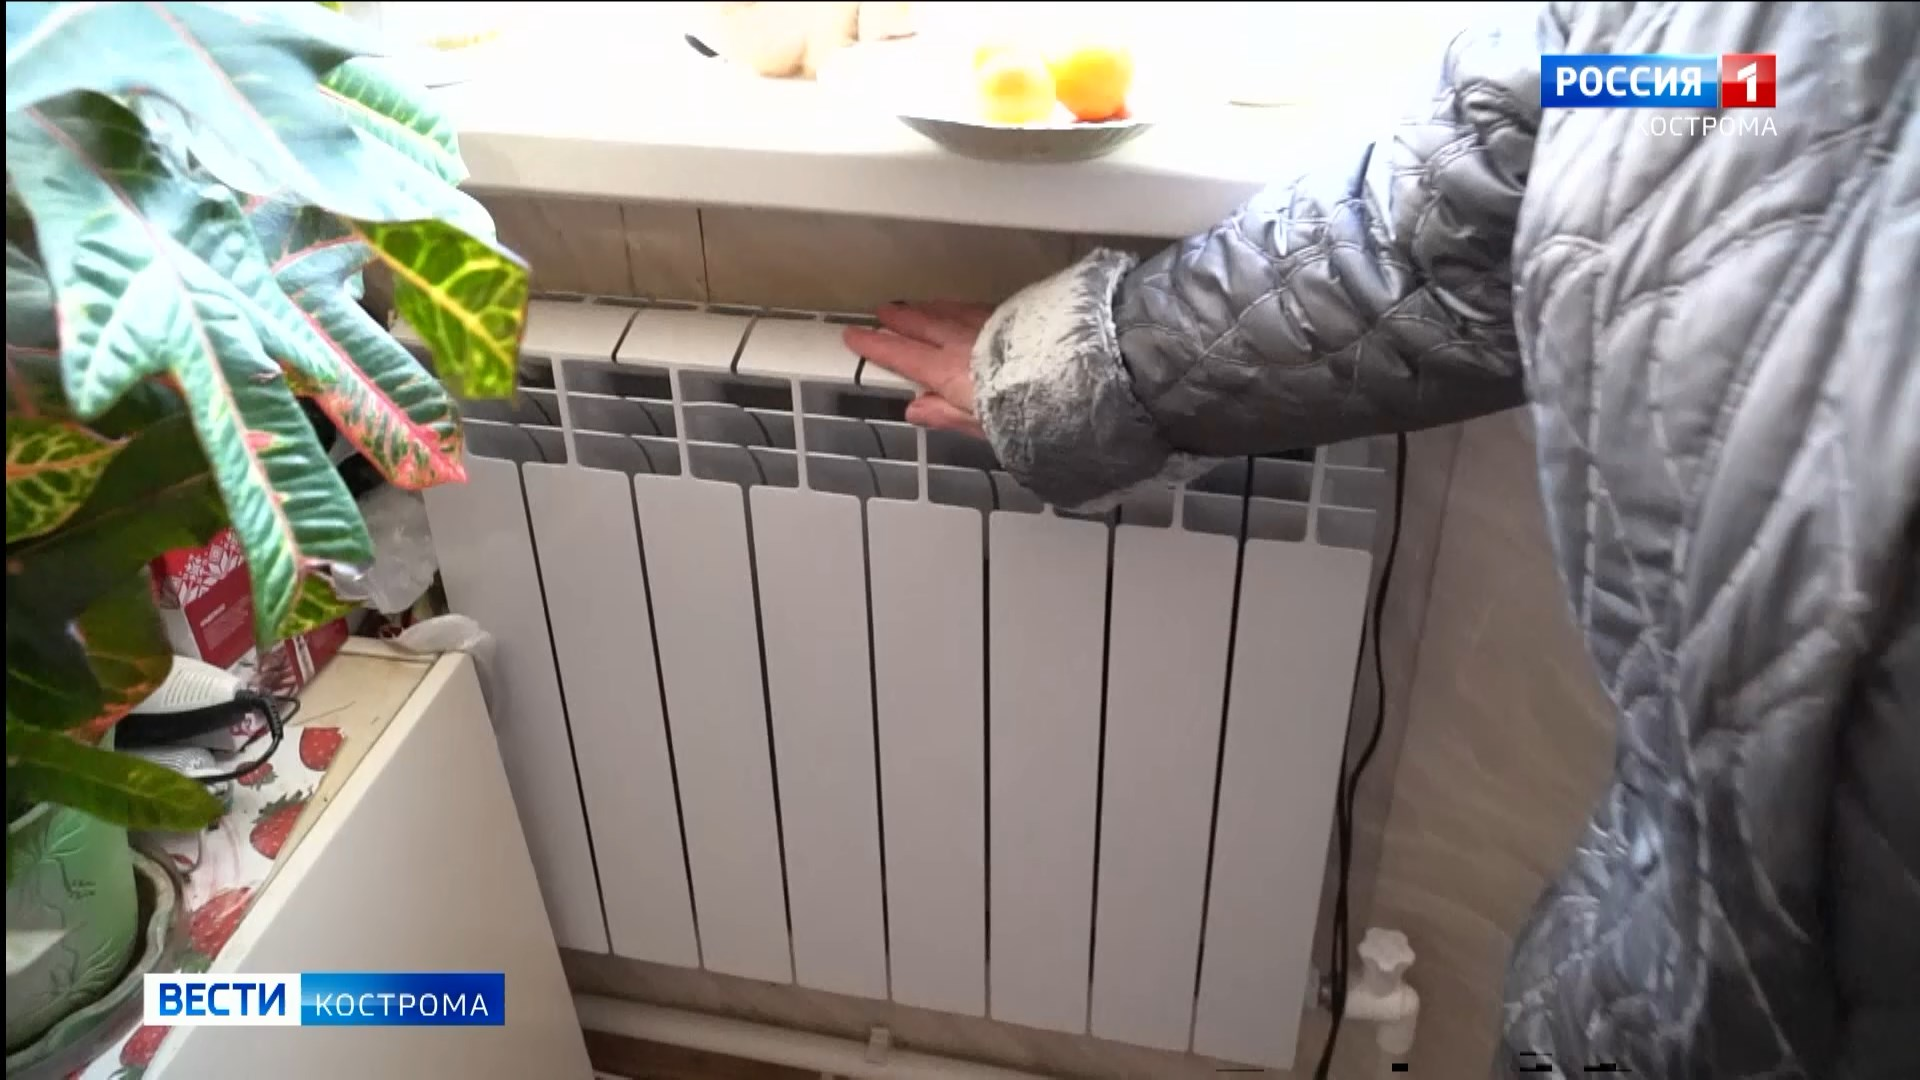 К теплоснабжению в Костроме подключено только порядка 60% многоквартирных домов